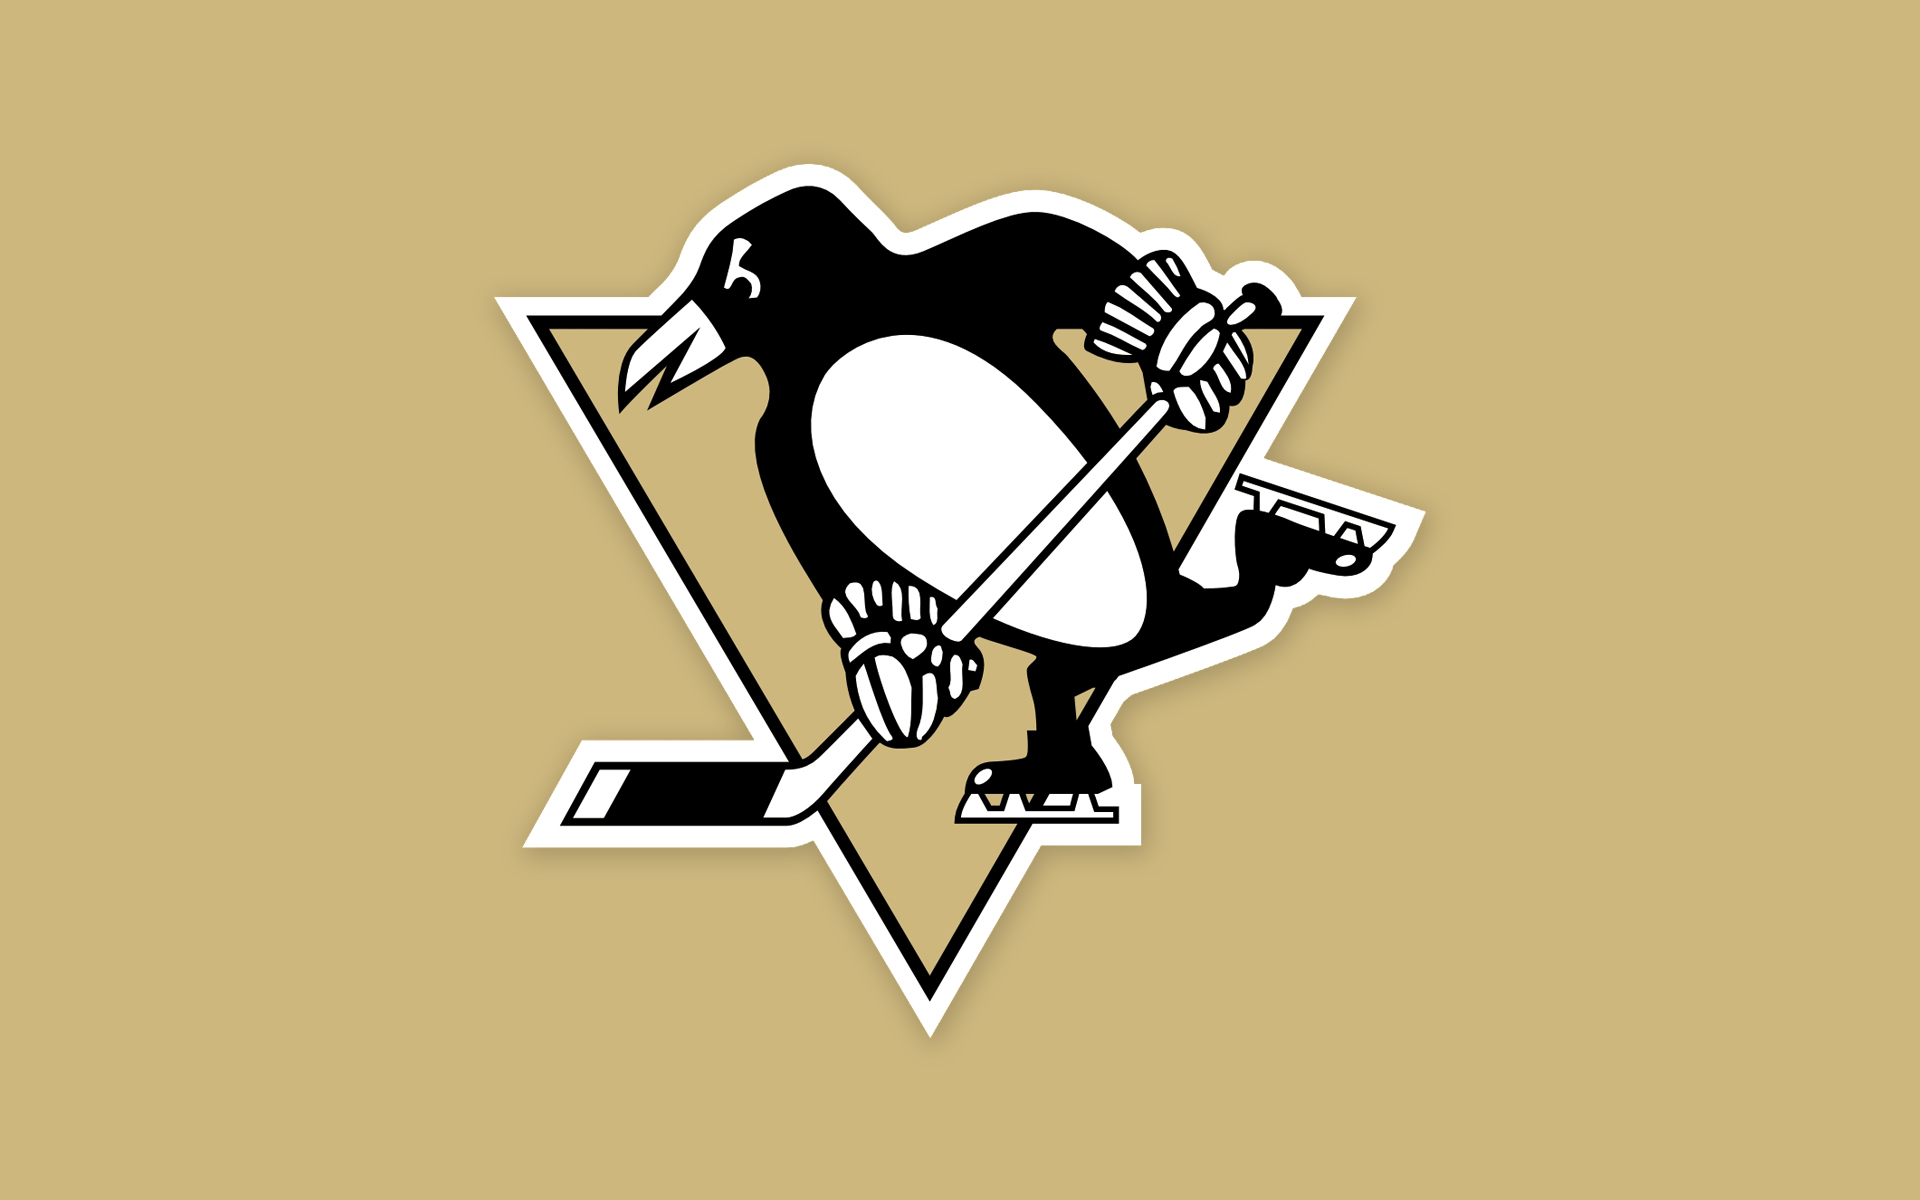 48+] Pittsburgh Penguins Wallpaper 1920x1080 - WallpaperSafari